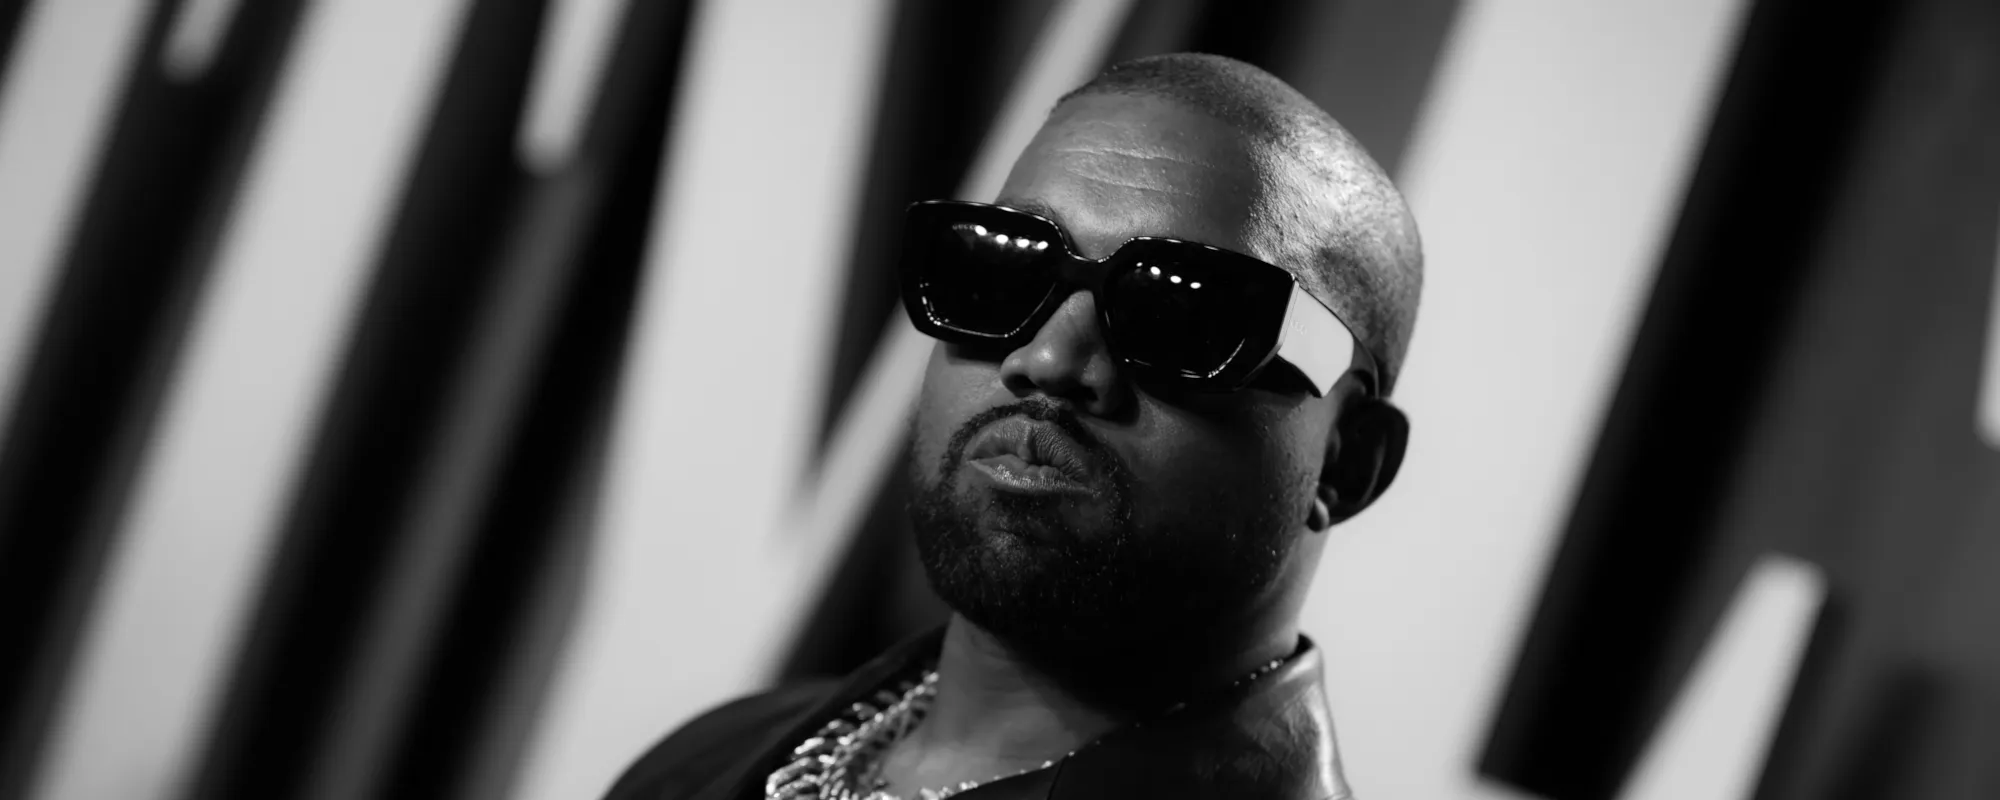 Kanye West to Boycott Coachella if Billie Eilish Doesn’t “Apologize” for Perceived Travis Scott Slight; Eilish Responds